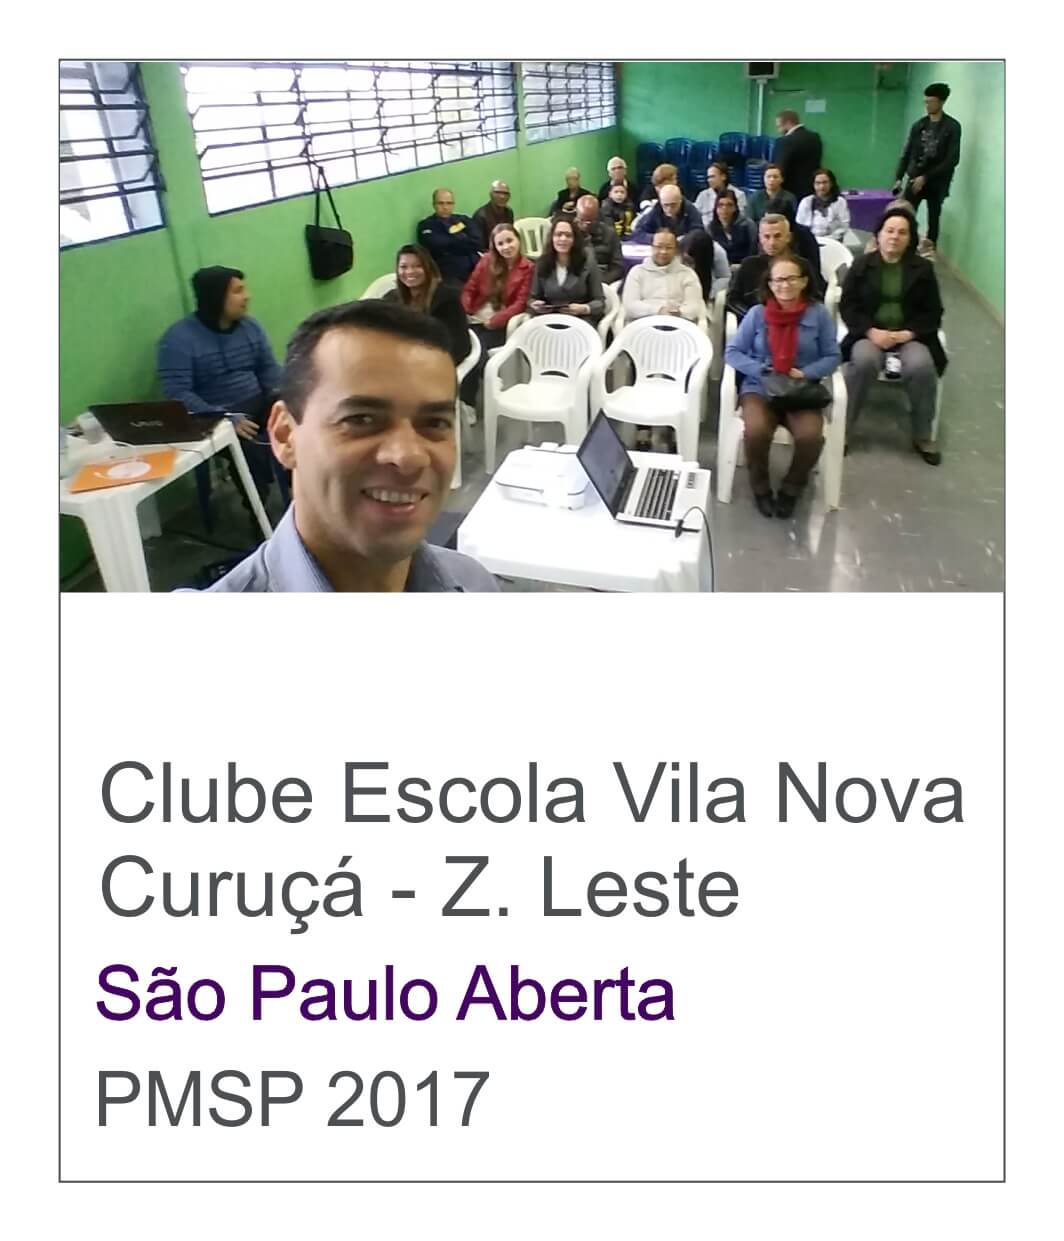 Clube Escola Vila Nova Curuça Atividade para idosos